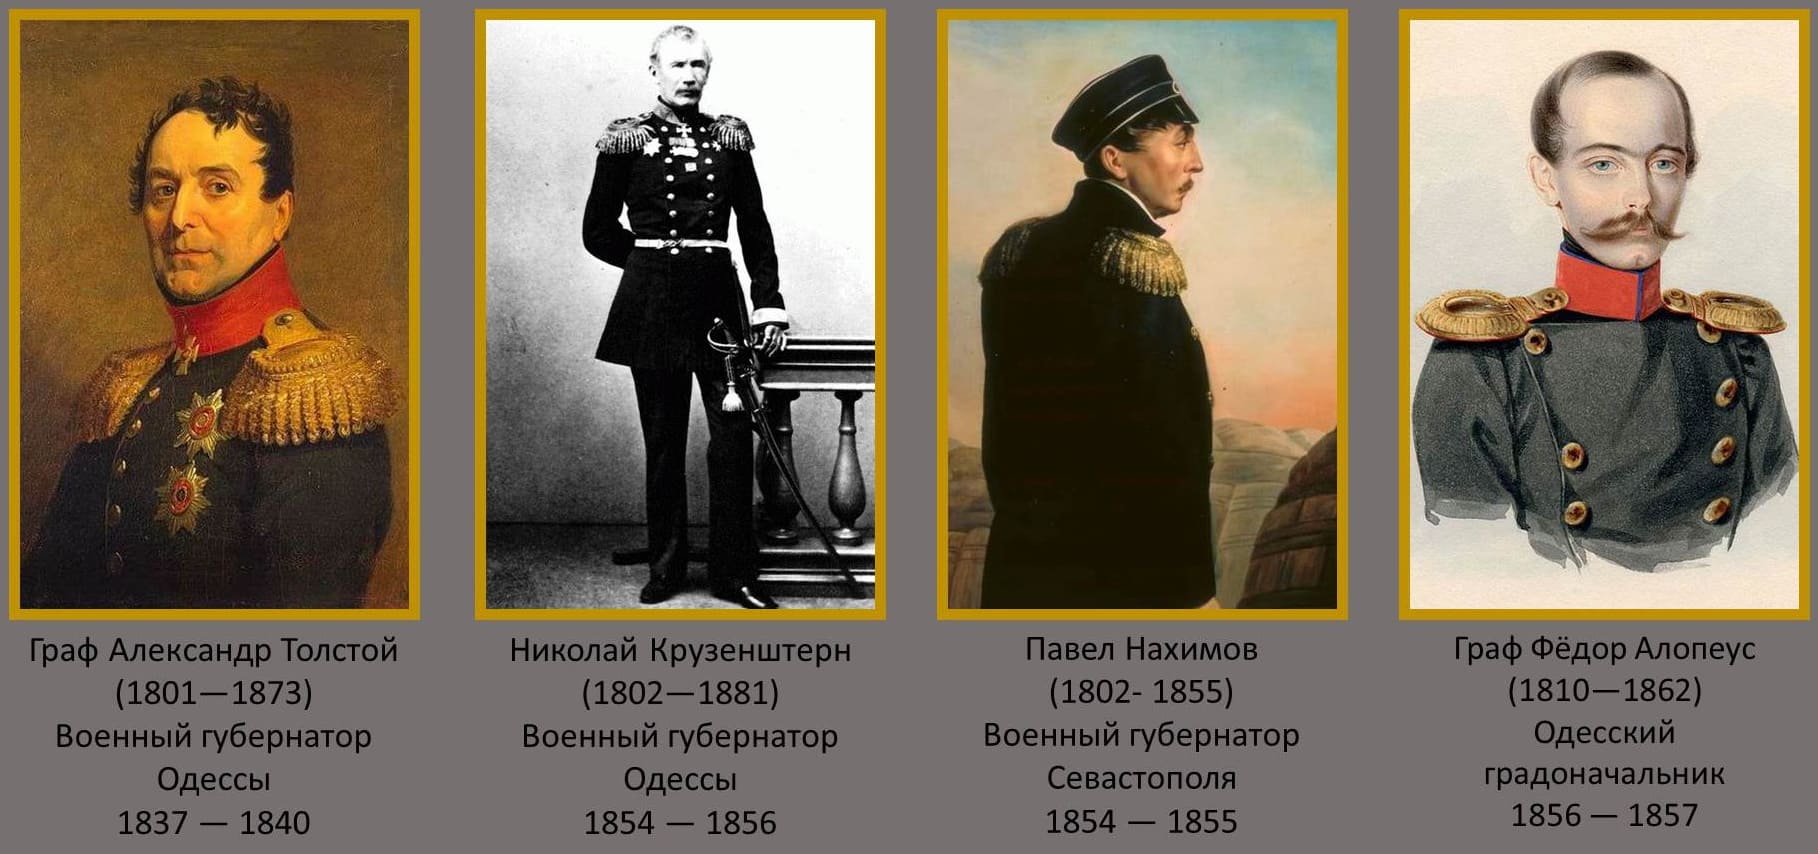 Граф Александр Толстой, Николай Крузенштерн, Адмирал Павел Нахимов, Граф Фёдор Алопеус